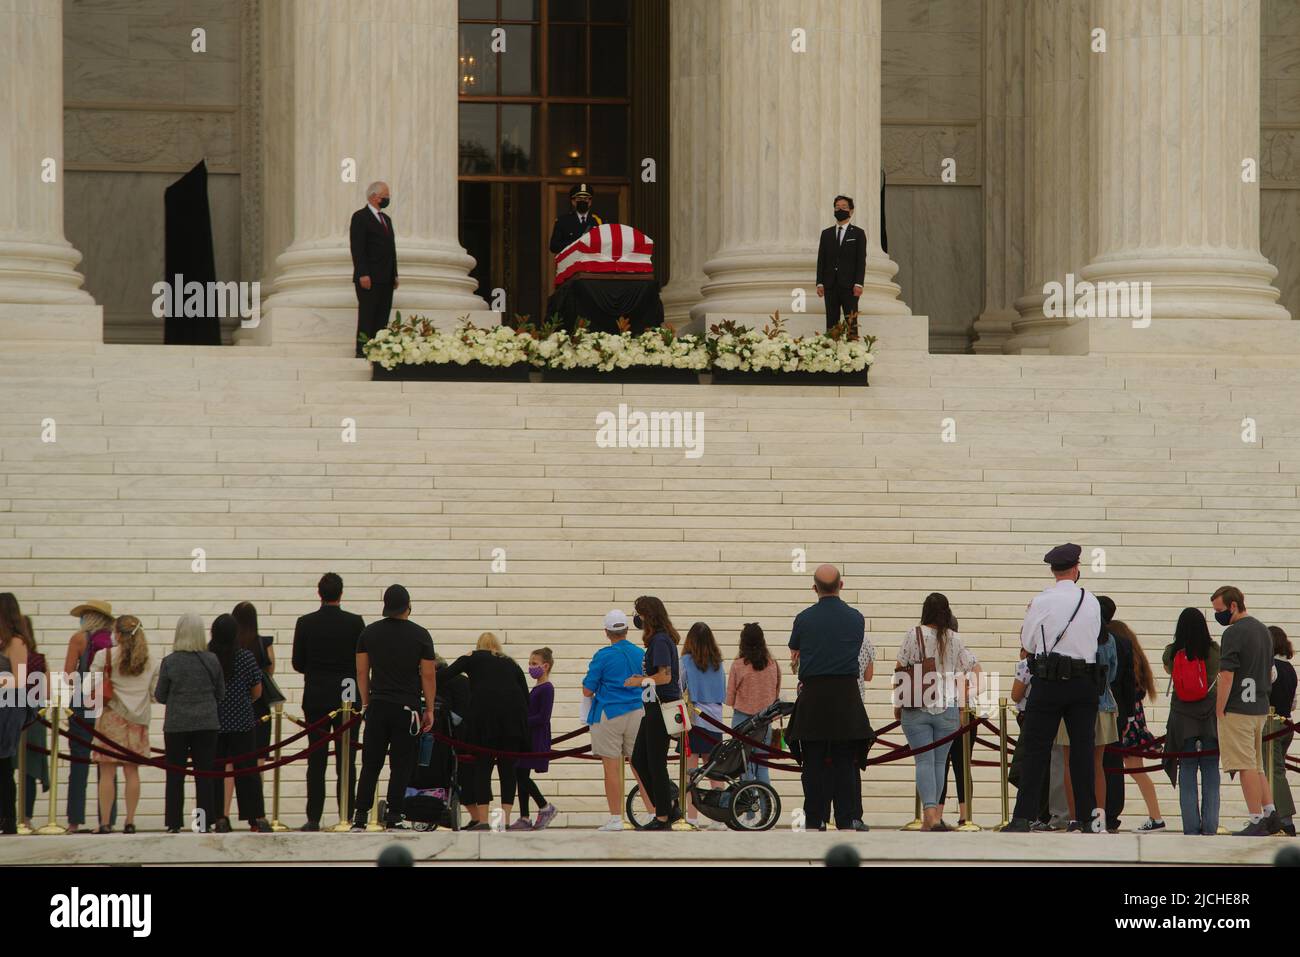 Washington - 24. September 2022: Menschen stehen an, um der Richterin des Obersten Gerichtshofs der USA, Ruth Bader Ginsburg, ihre Achtung zu erweisen, während ihre Schatulle im Staat liegt. Stockfoto